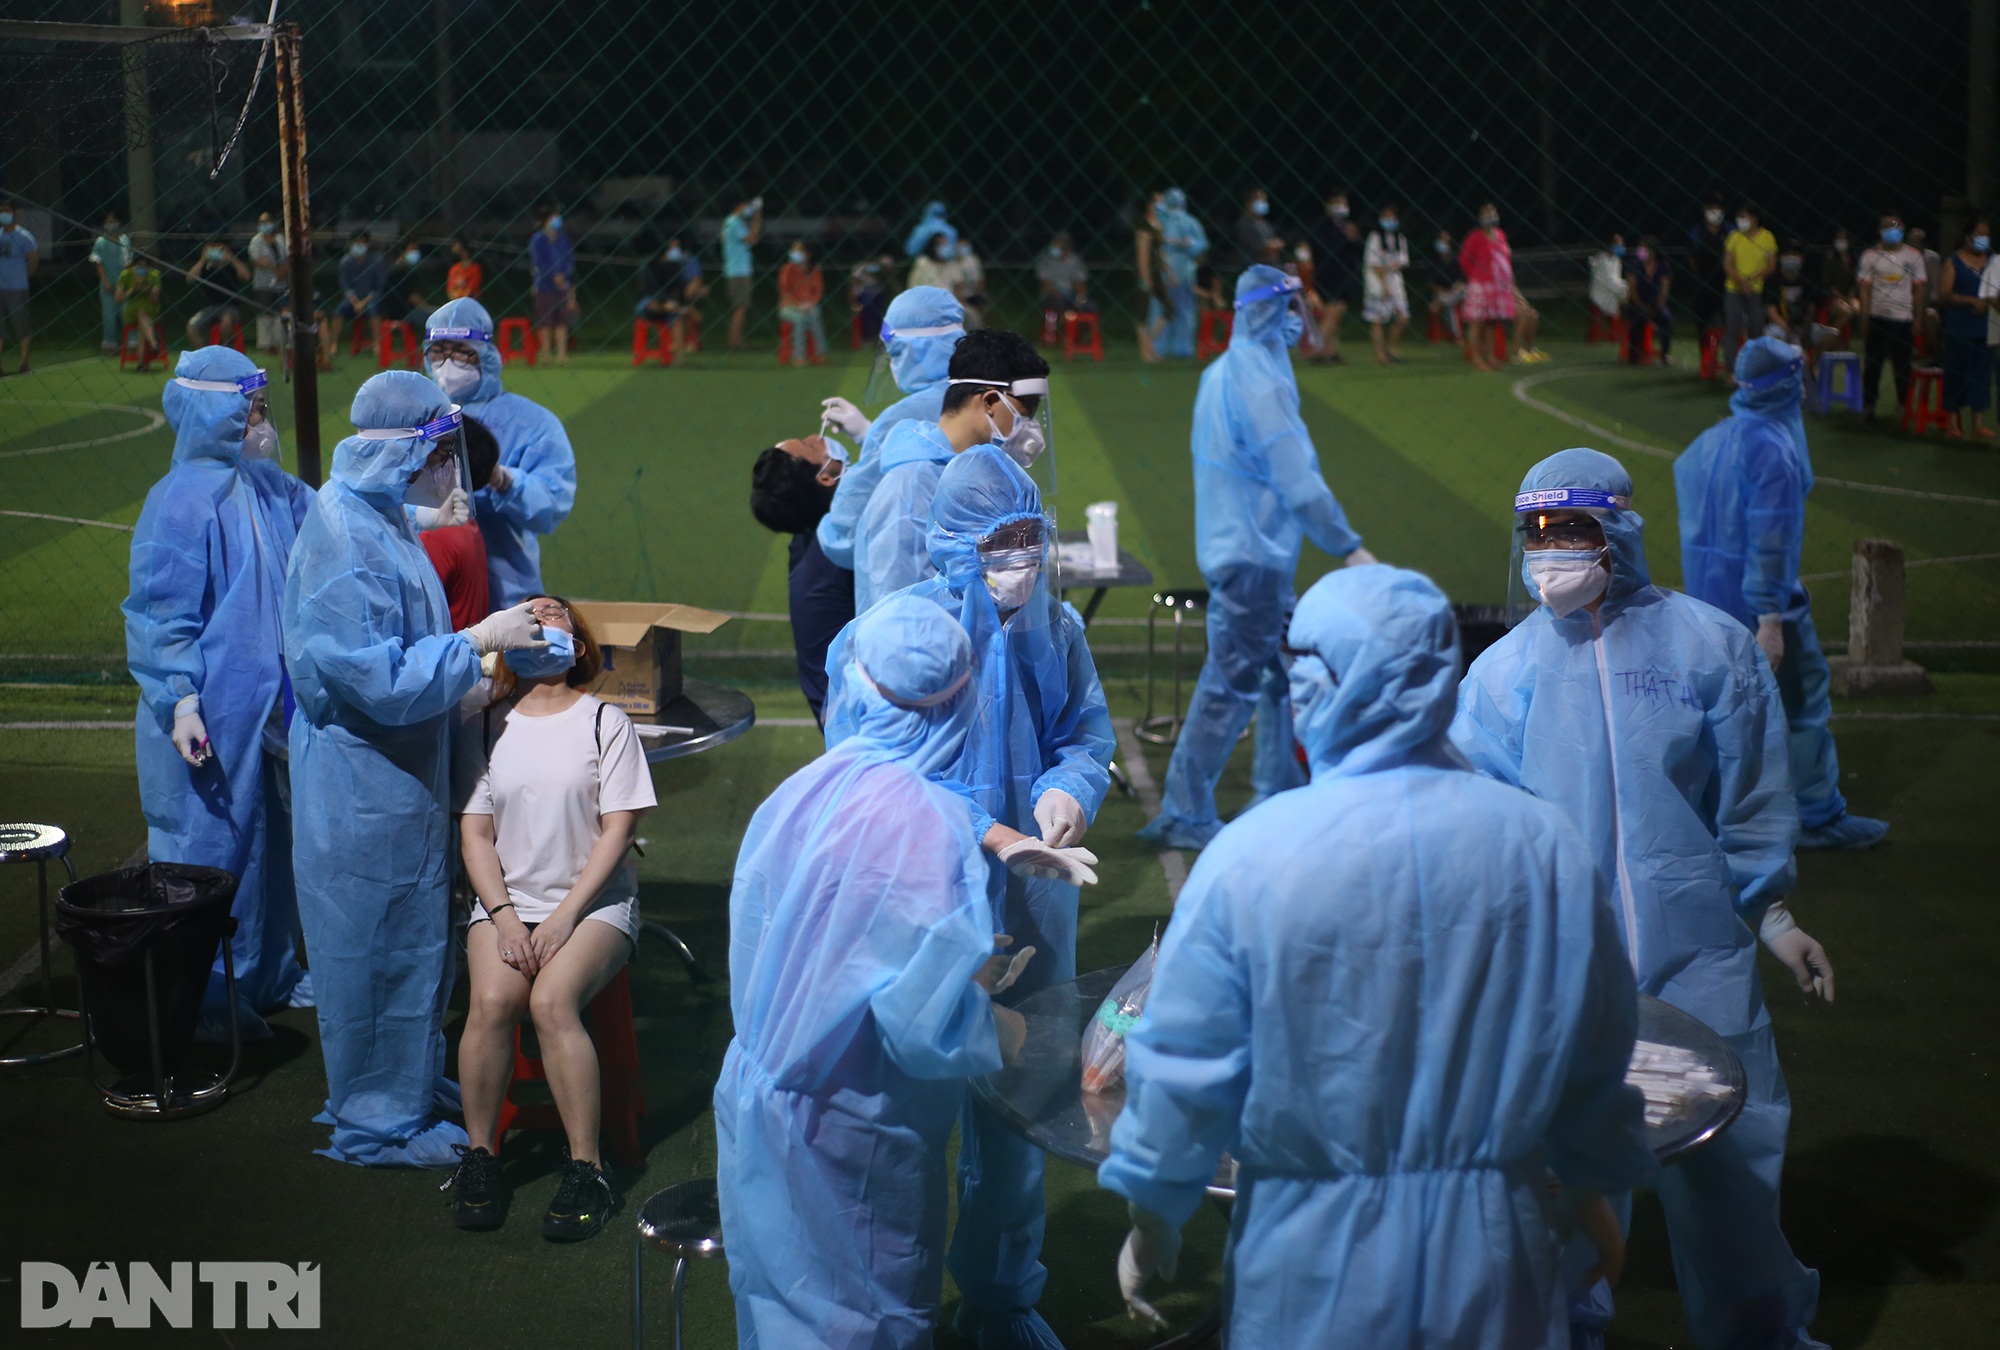 Hàng nghìn người dân Sài Gòn xếp hàng lấy mẫu xét nghiệm Covid-19 trong đêm - 12